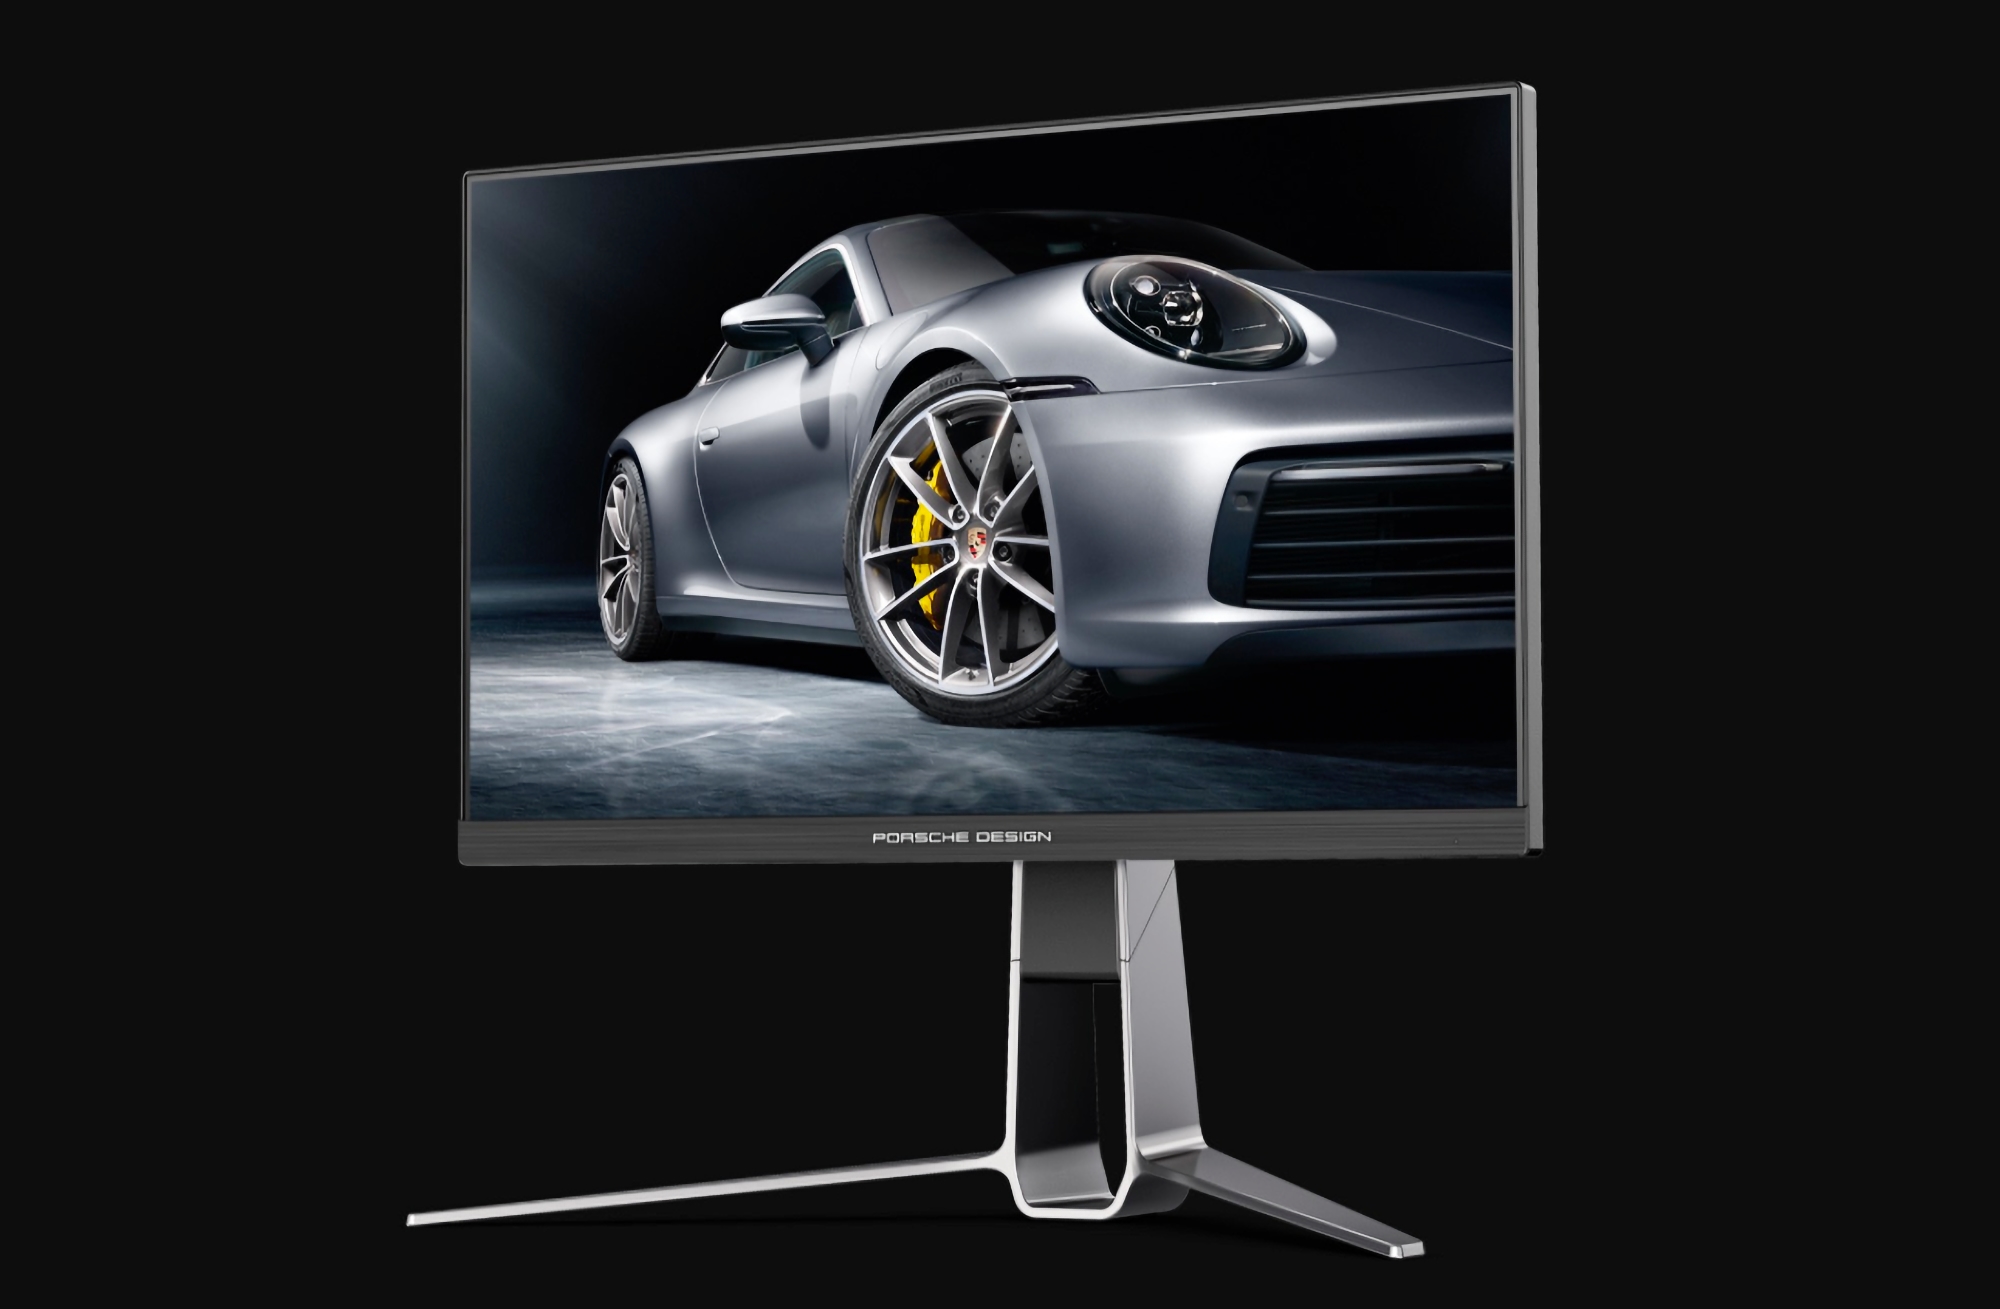 AOC e Porsche Design hanno presentato un monitor da gioco AGON Pro PD27S con schermo da 27 pollici a 165 Hz